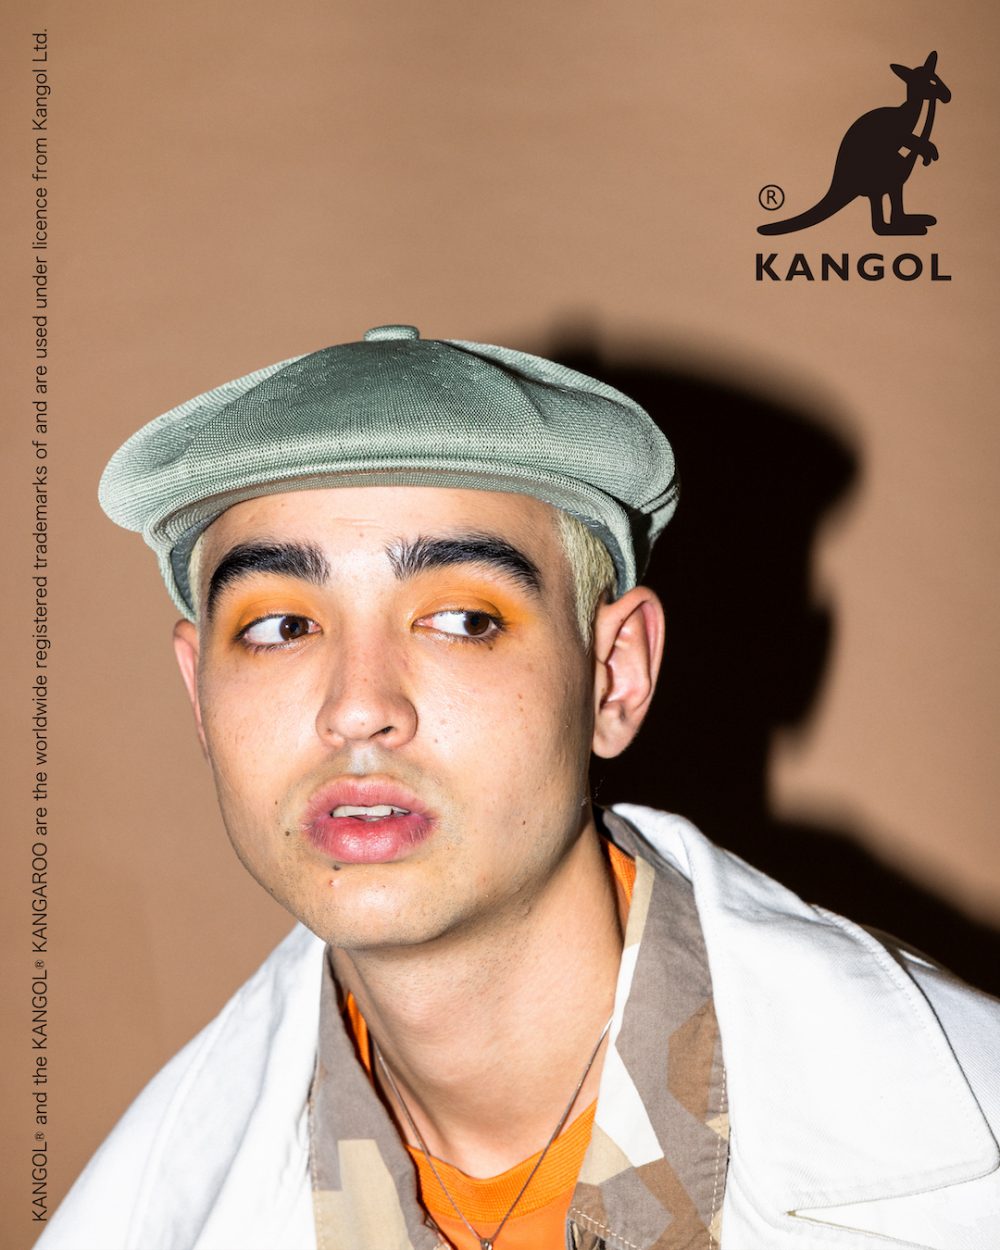 KANGOL（カンゴール）の人気ハンチングに春らしいカラー&素材のBEAMS別注が登場！